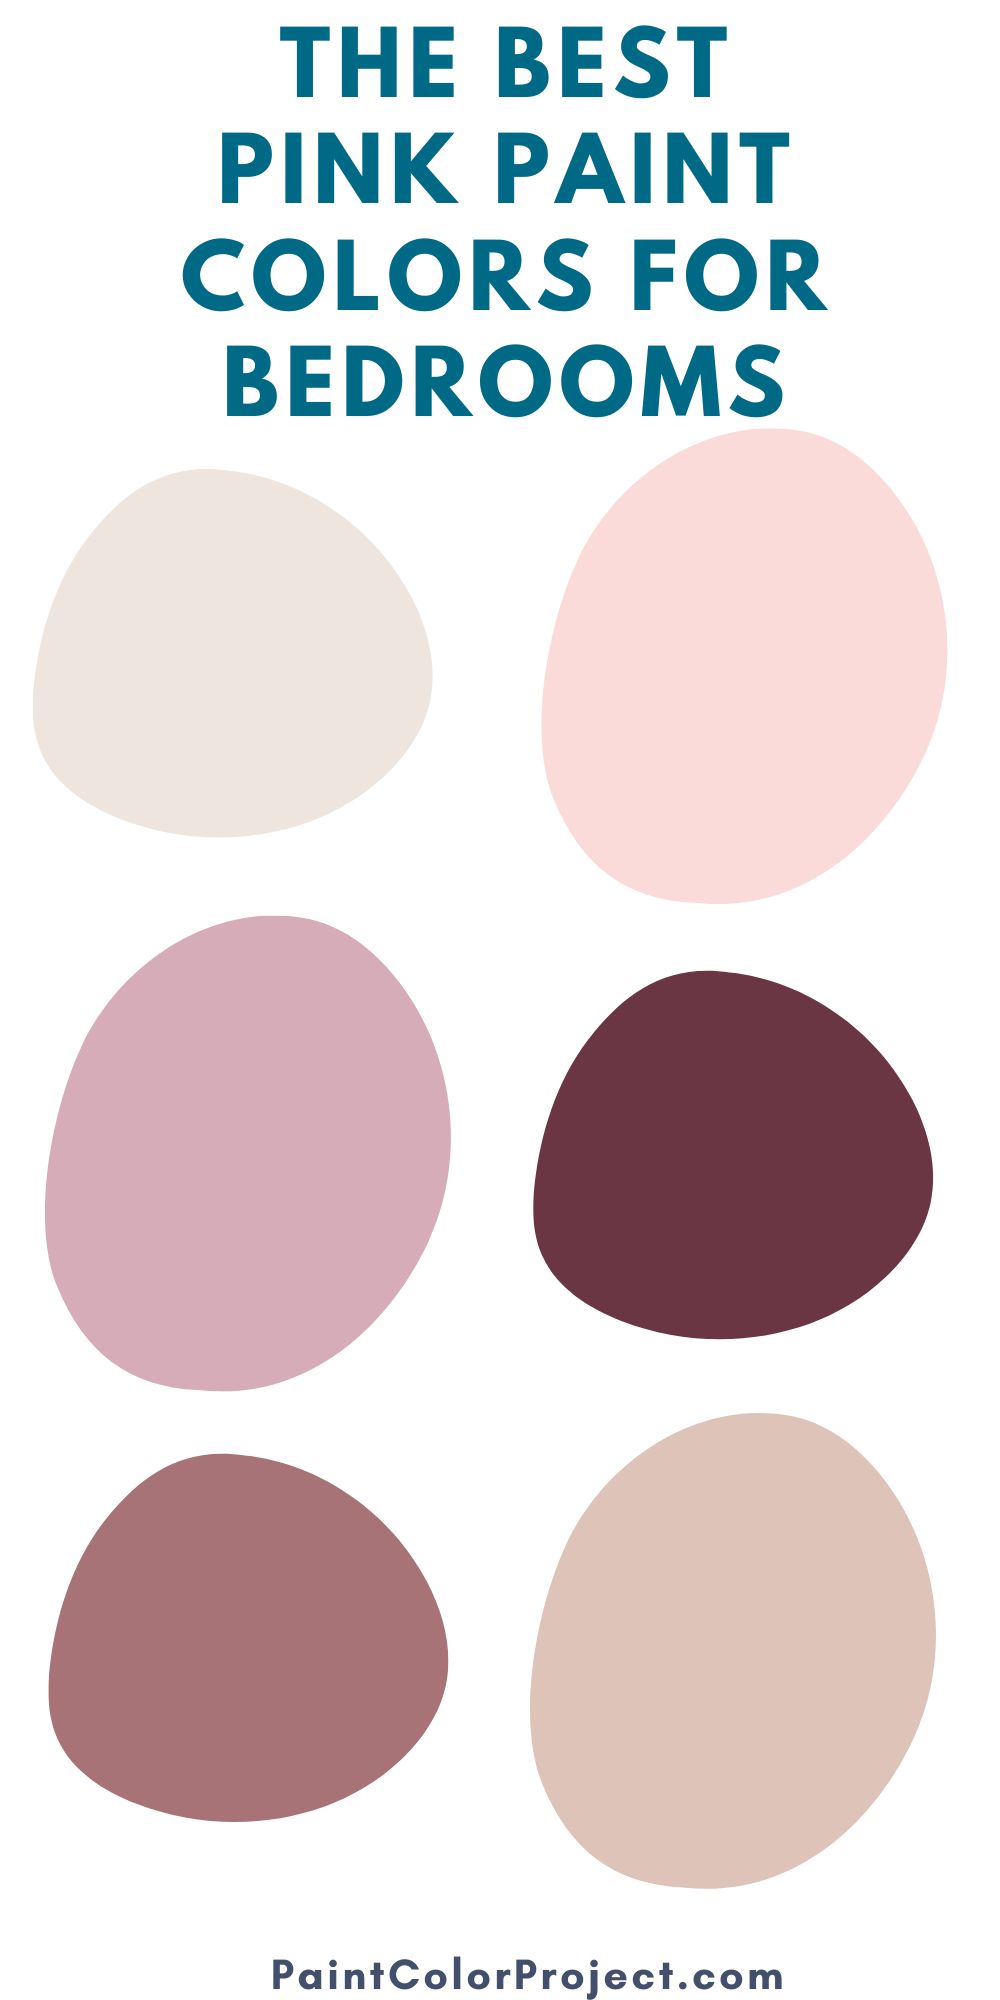 15 best pink bedroom paint colors - The Paint Color Project